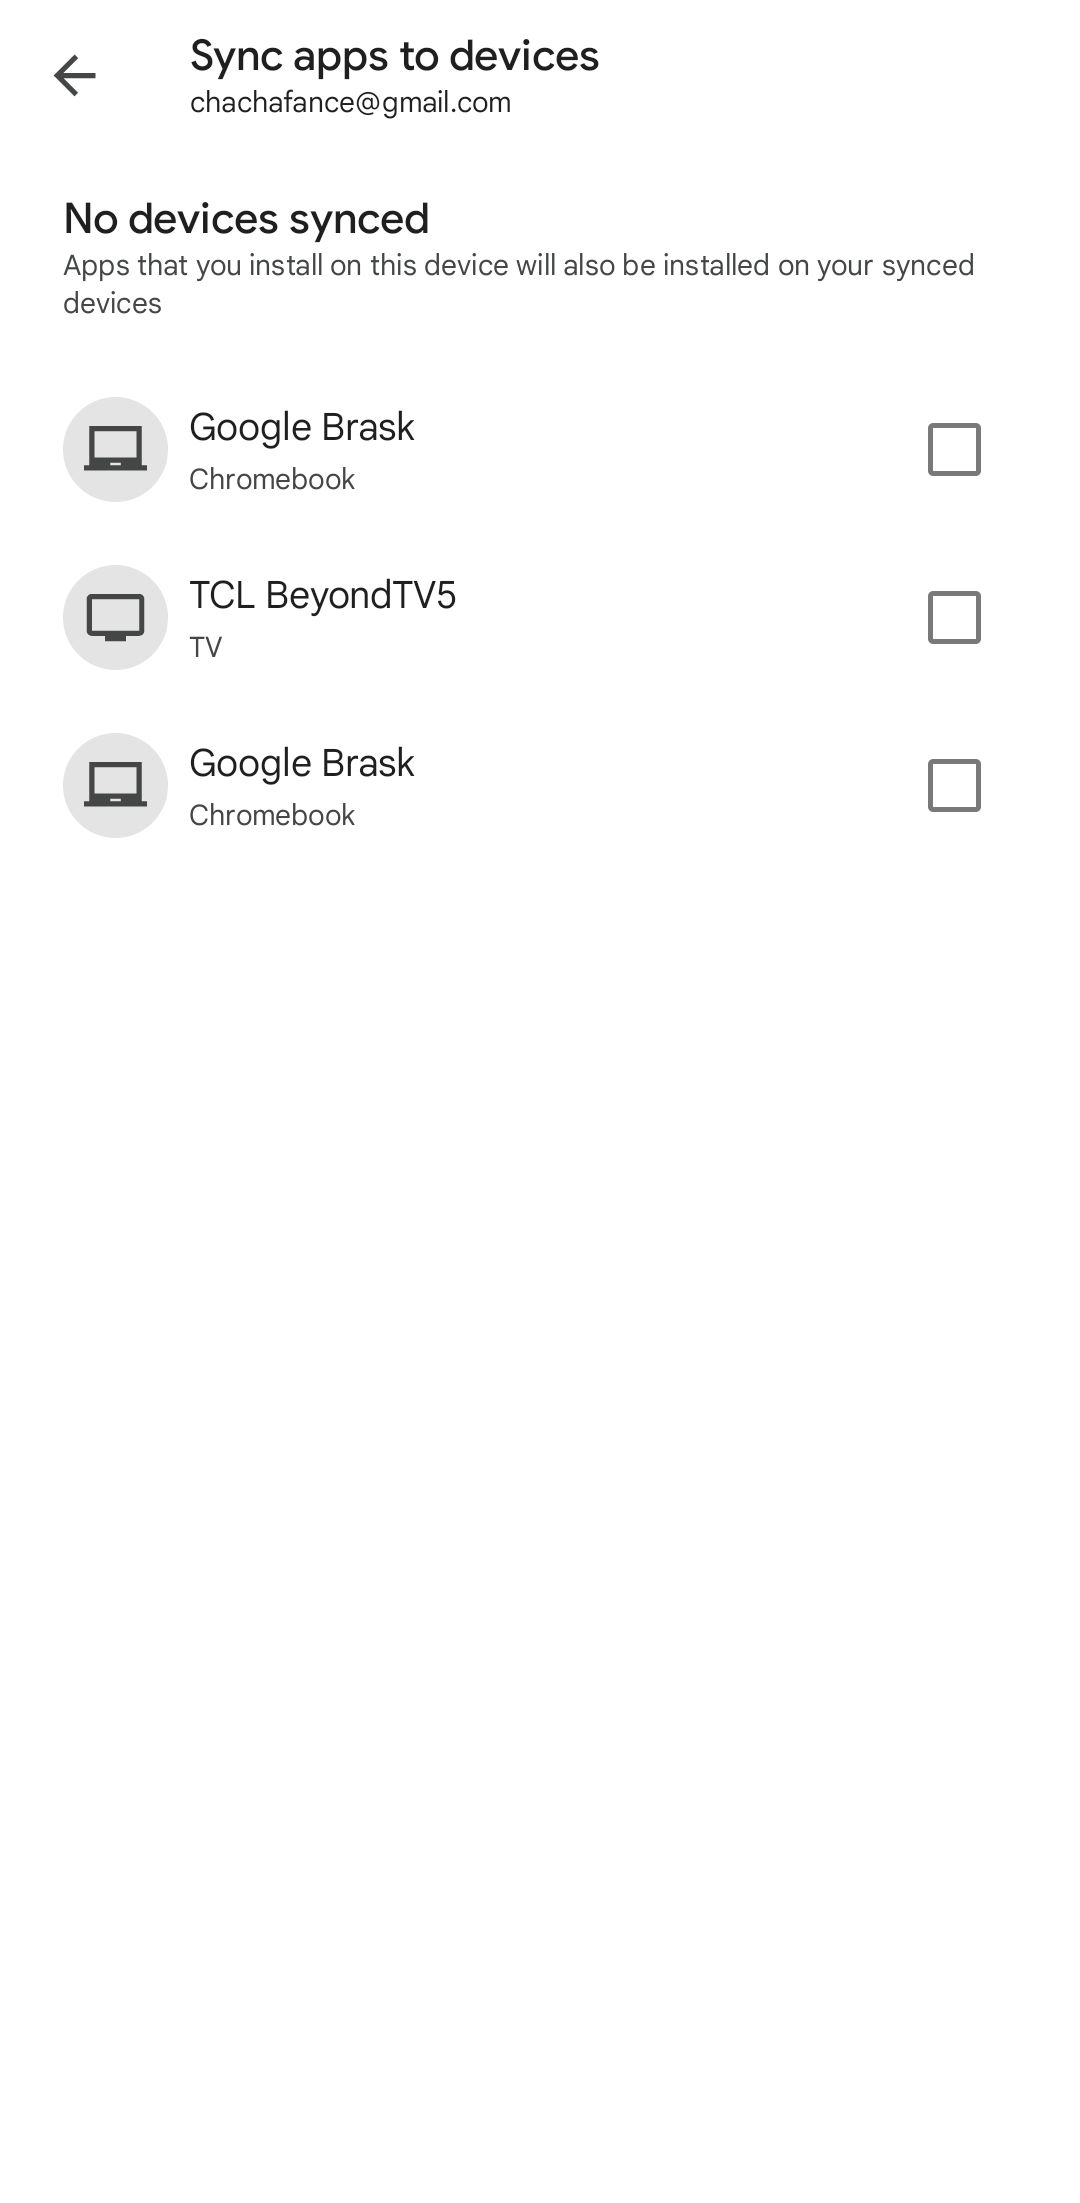 Captura de tela das opções de sincronização de aplicativos com dispositivos no aplicativo móvel Google Play Store